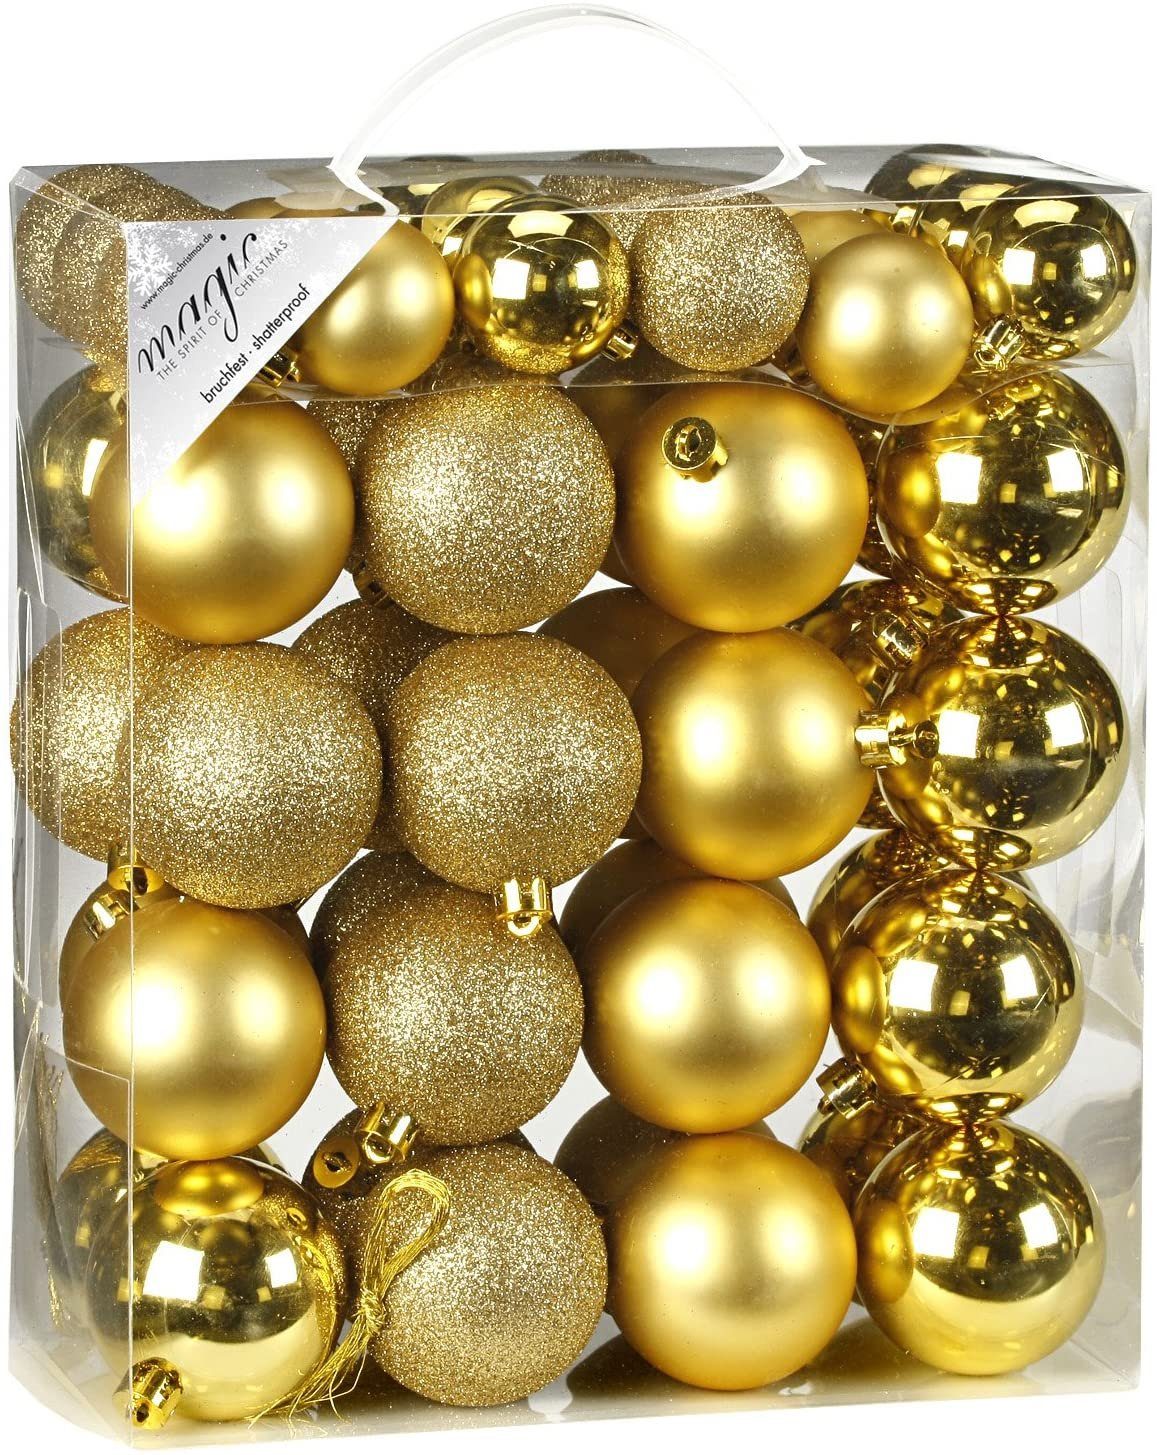 INGE-GLAS® Christbaumschmuck Inge's Weihnachtskugel 50 Stück 4-6 cm Gold, Kunststoff, Baumdekoration, Baumschmuck, Weihnachtsdekoration, Kugel-Set | Dekohänger